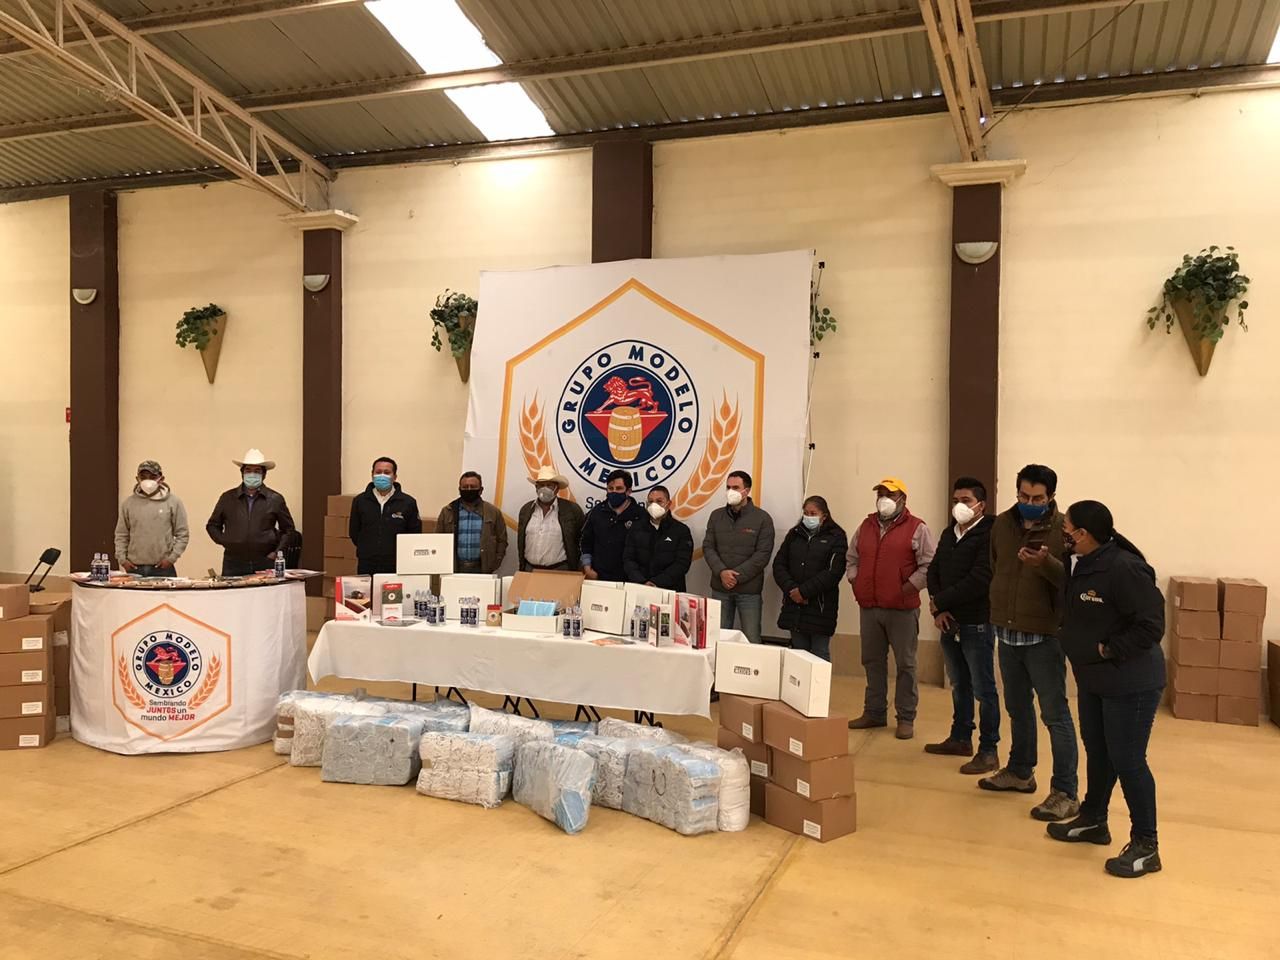 Grupo Modelo dona cubrebocas, caretas y gel antibacterial a agricultores de Apan, Hidalgo 